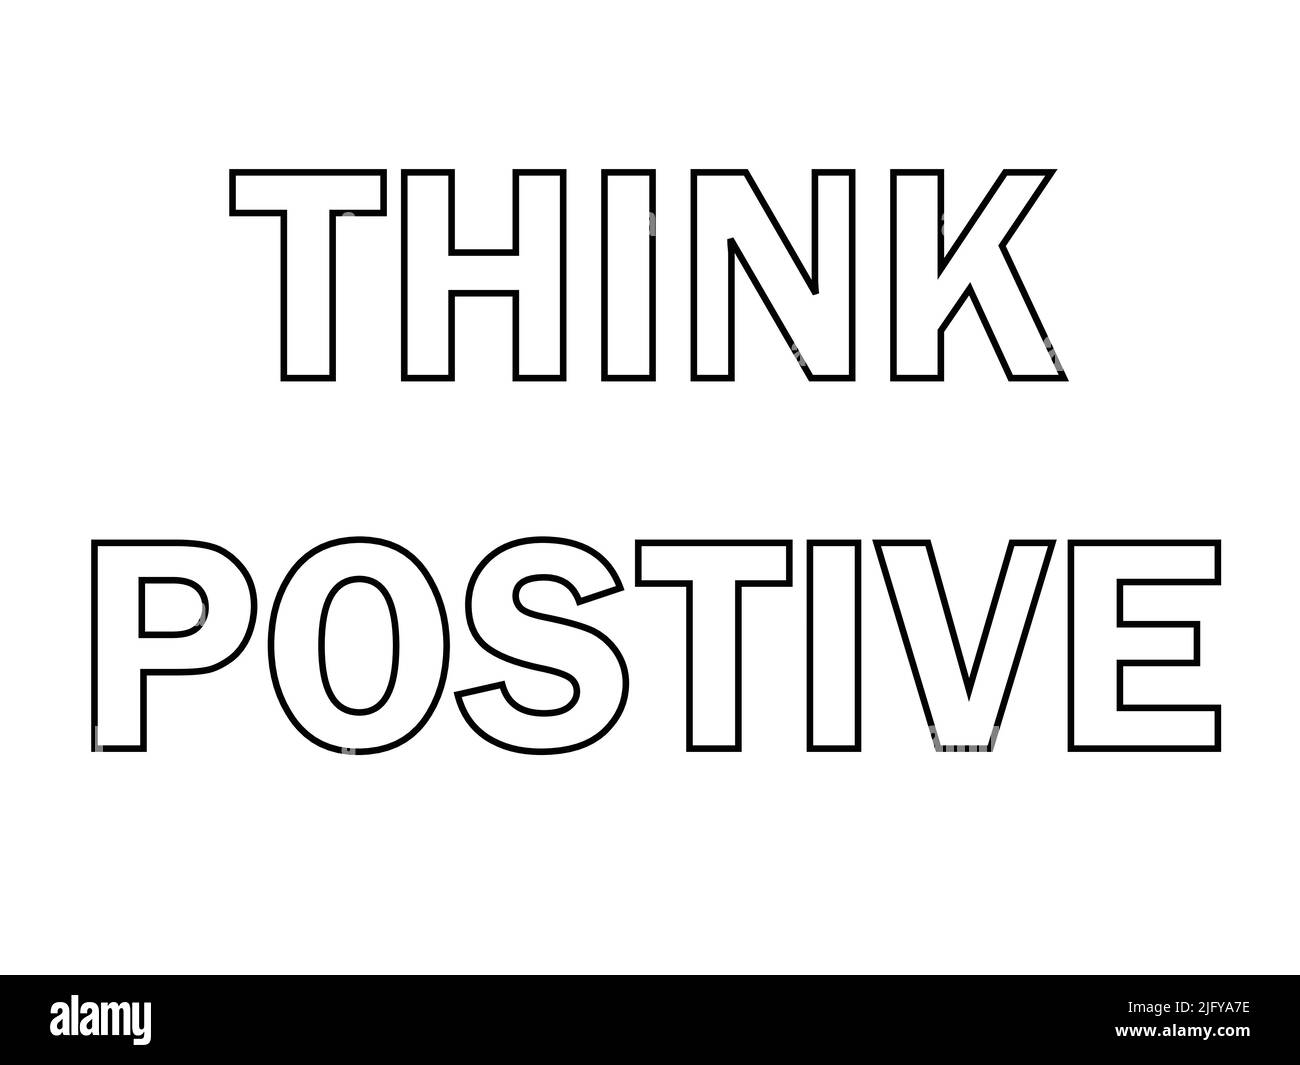 Denken Sie positiv, motivierender Text inspirierendes Zitat. Mit weißem Hintergrund Stock Vektor